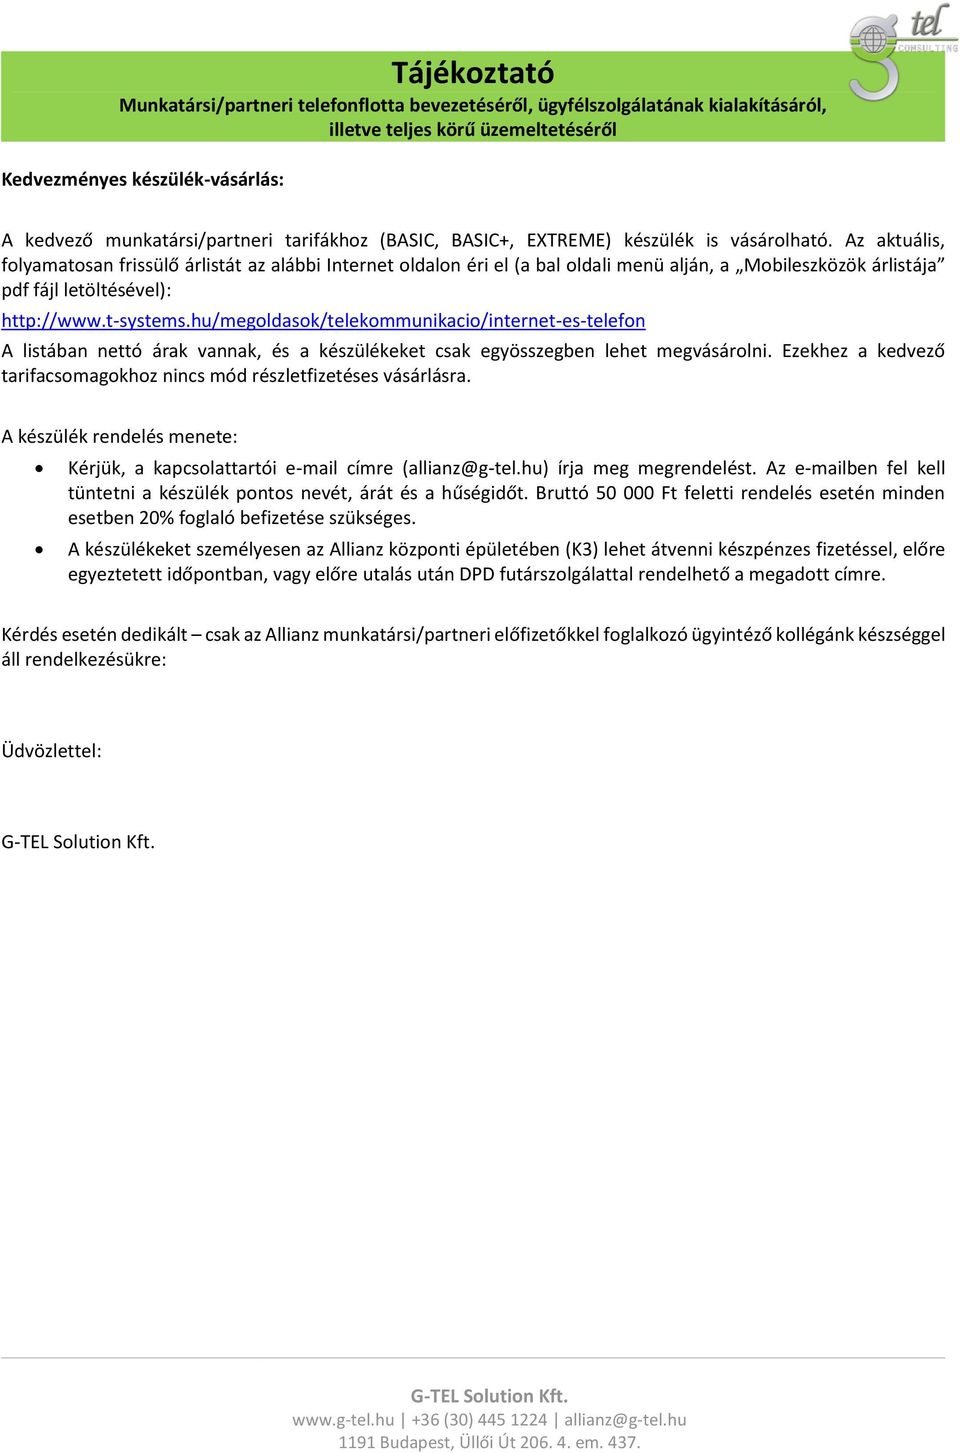 Tájékoztató Munkatársi/partneri telefonflotta bevezetéséről,  ügyfélszolgálatának kialakításáról, illetve teljes körű üzemeltetéséről -  PDF Free Download